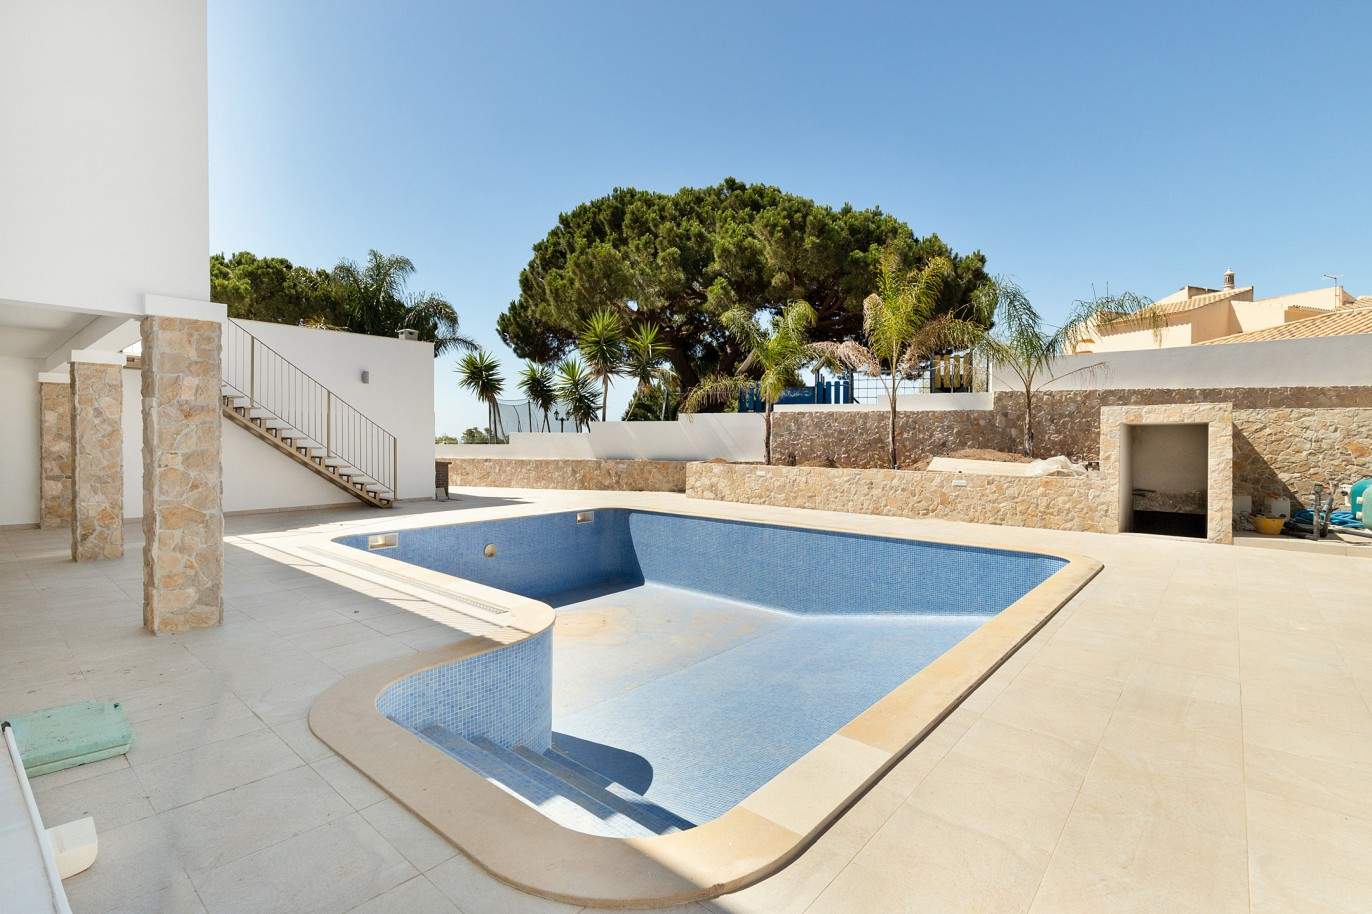 Villa de 5 dormitorios, de nueva construcción, en venta en Albufeira, Algarve_203247